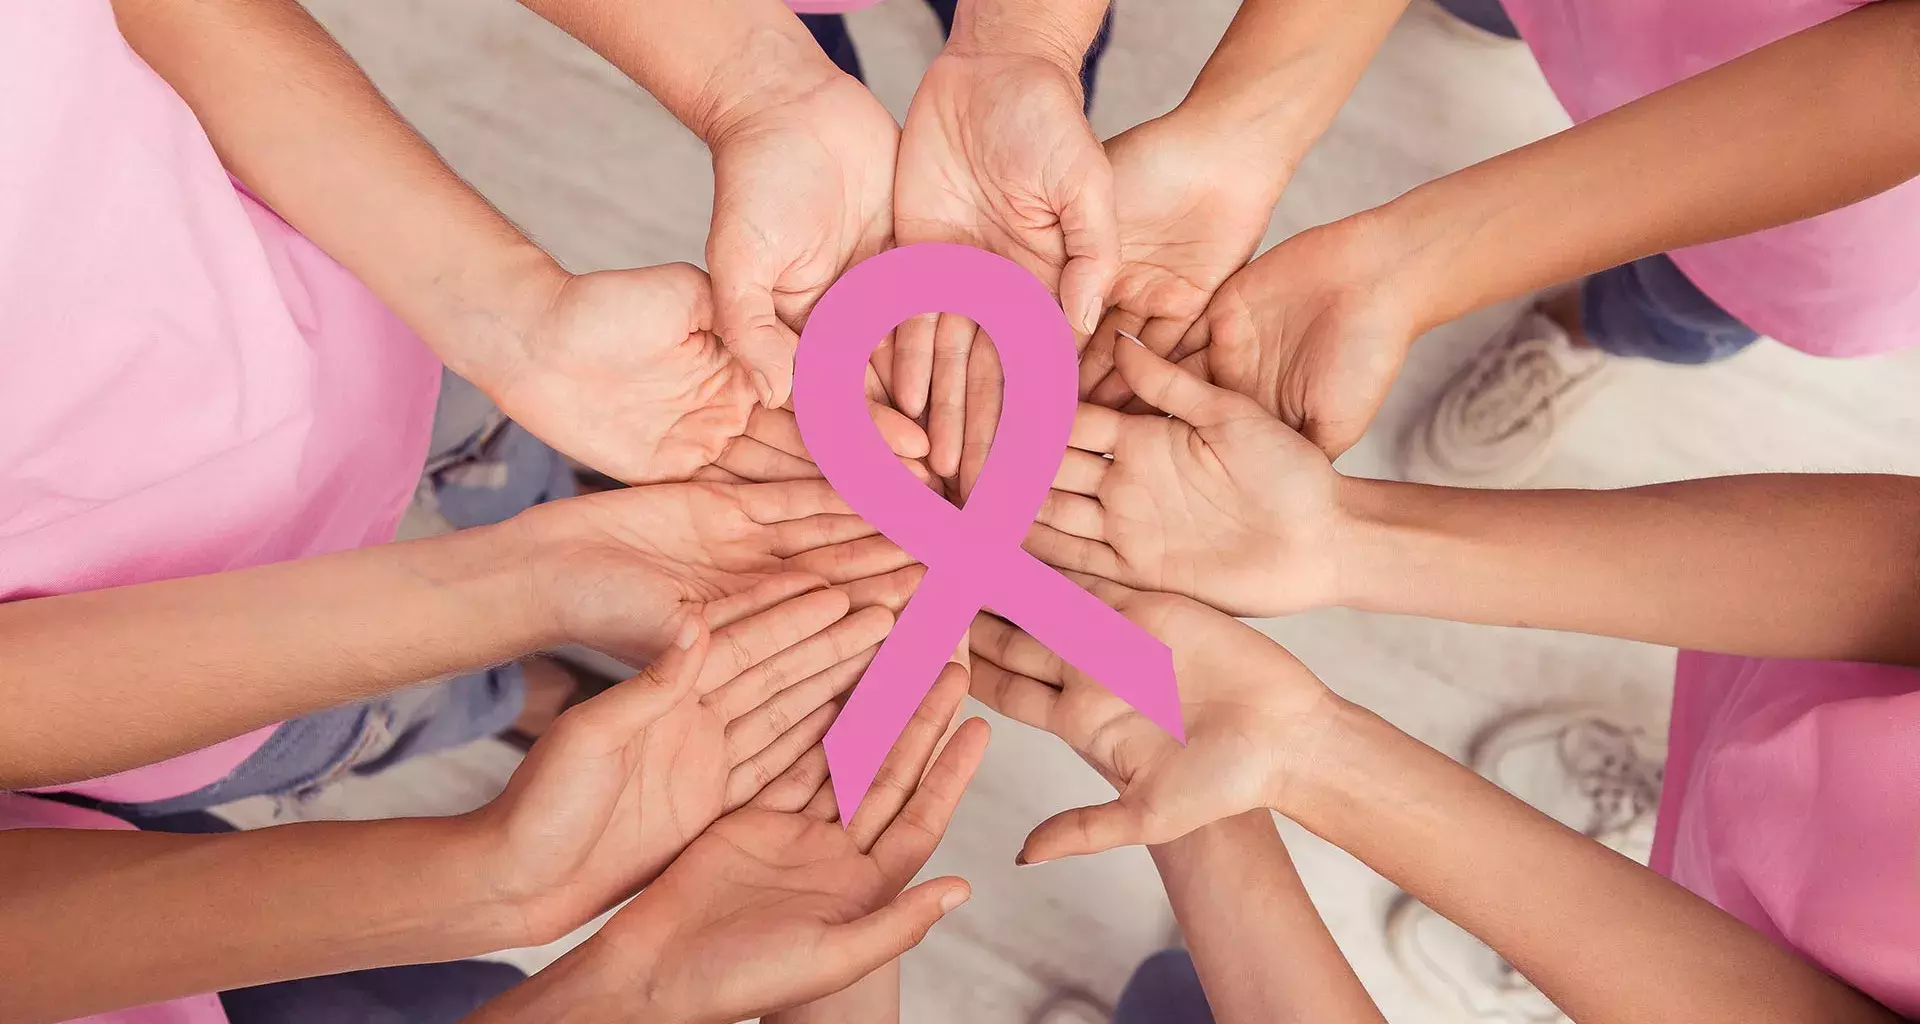 ¡Semana Rosa! PrepaTec Mty se une a sensibilizar sobre cáncer de mama